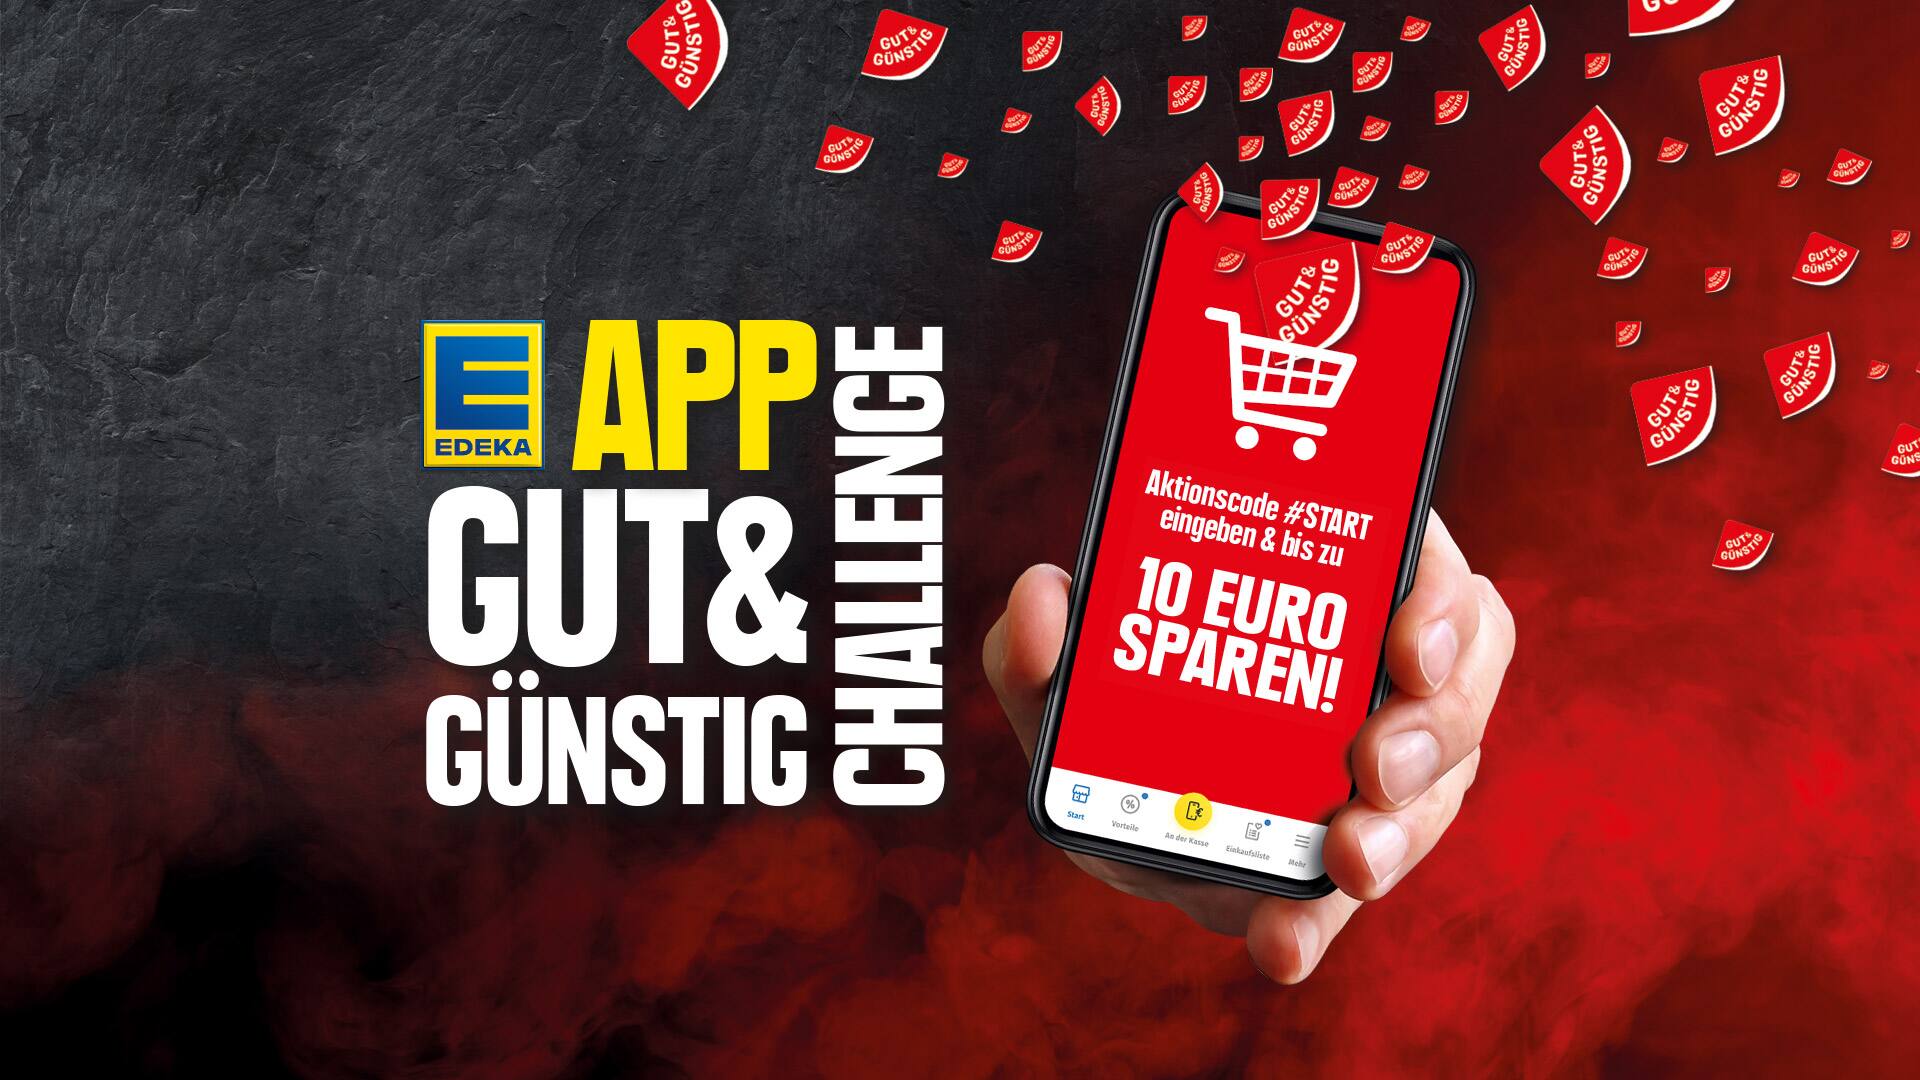  - GUT&GÜNSTIG App Challenge – Bei EDEKA oder MarktKauf GUT&GÜNSTIG Produkte kaufen & bis zu 10€ Gutschein Coupons sichern